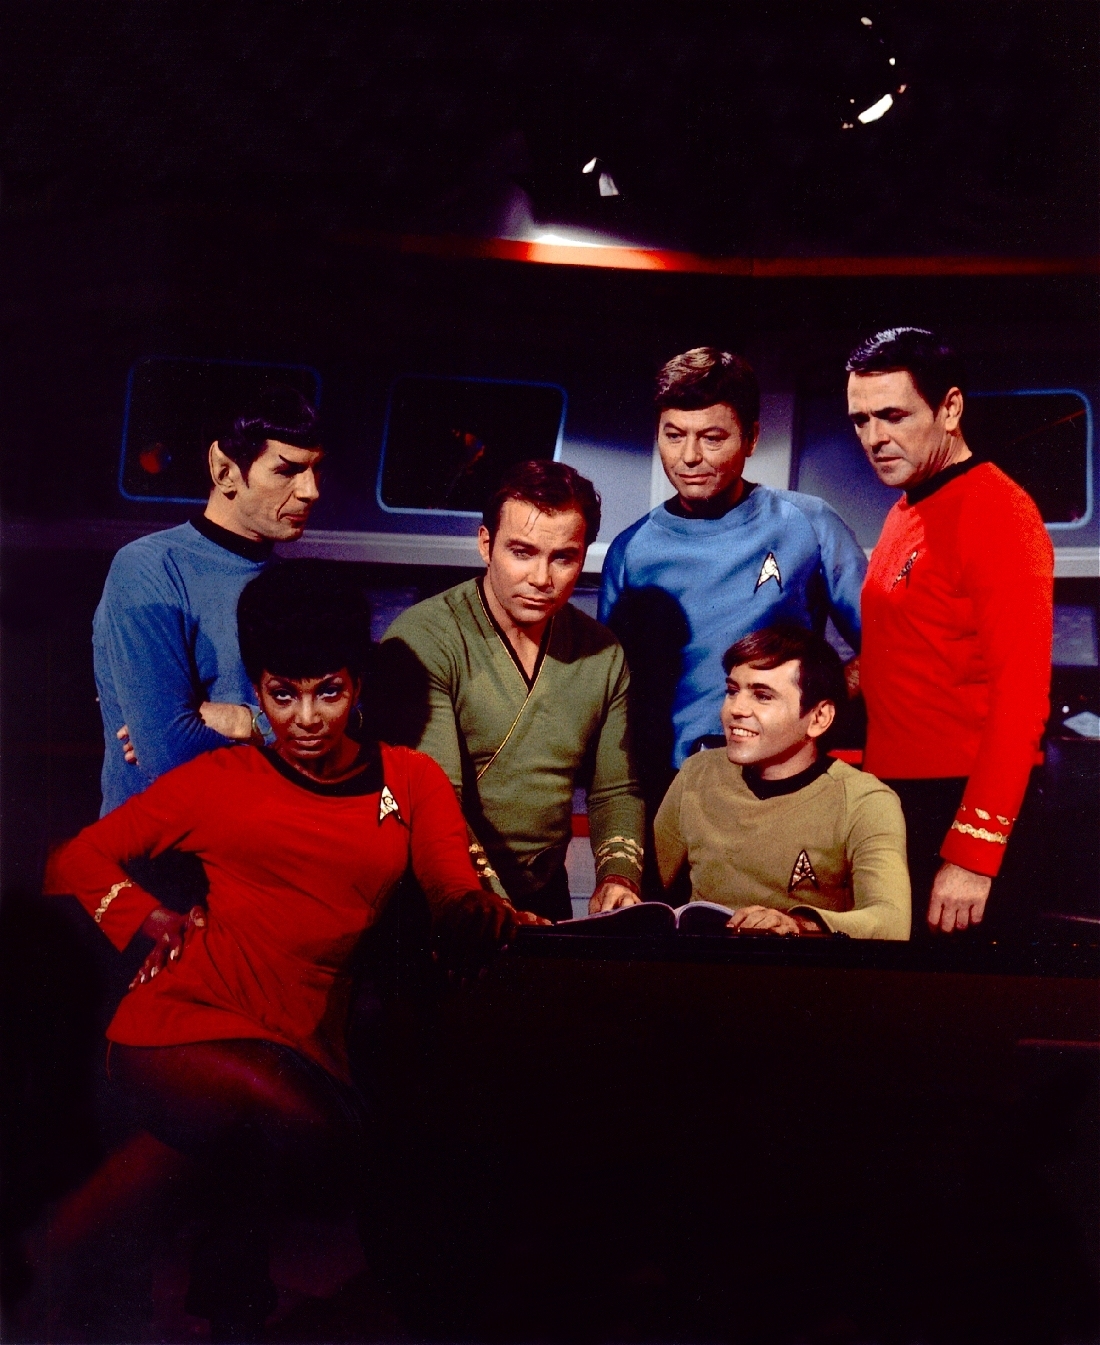 HQ Star Trek: The Original Series Wallpapers | File 820.81Kb